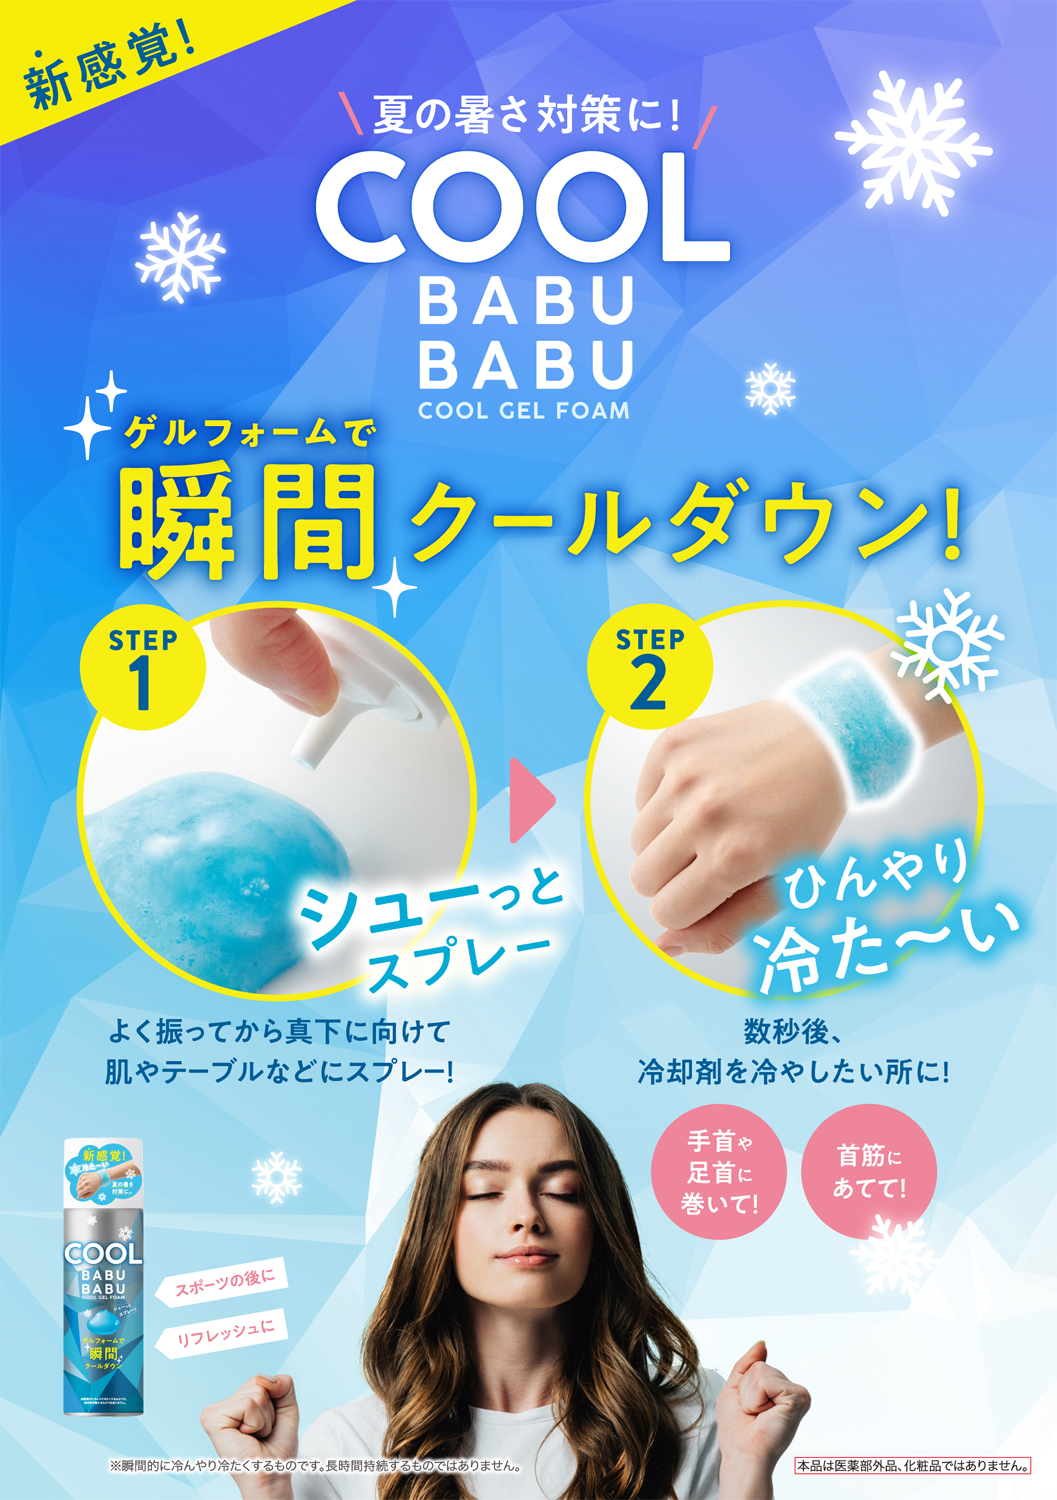 冷た い新感覚 瞬間クールダウンで猛暑対策 Cool Babubabu を4月10日発売 株式会社コジットのプレスリリース